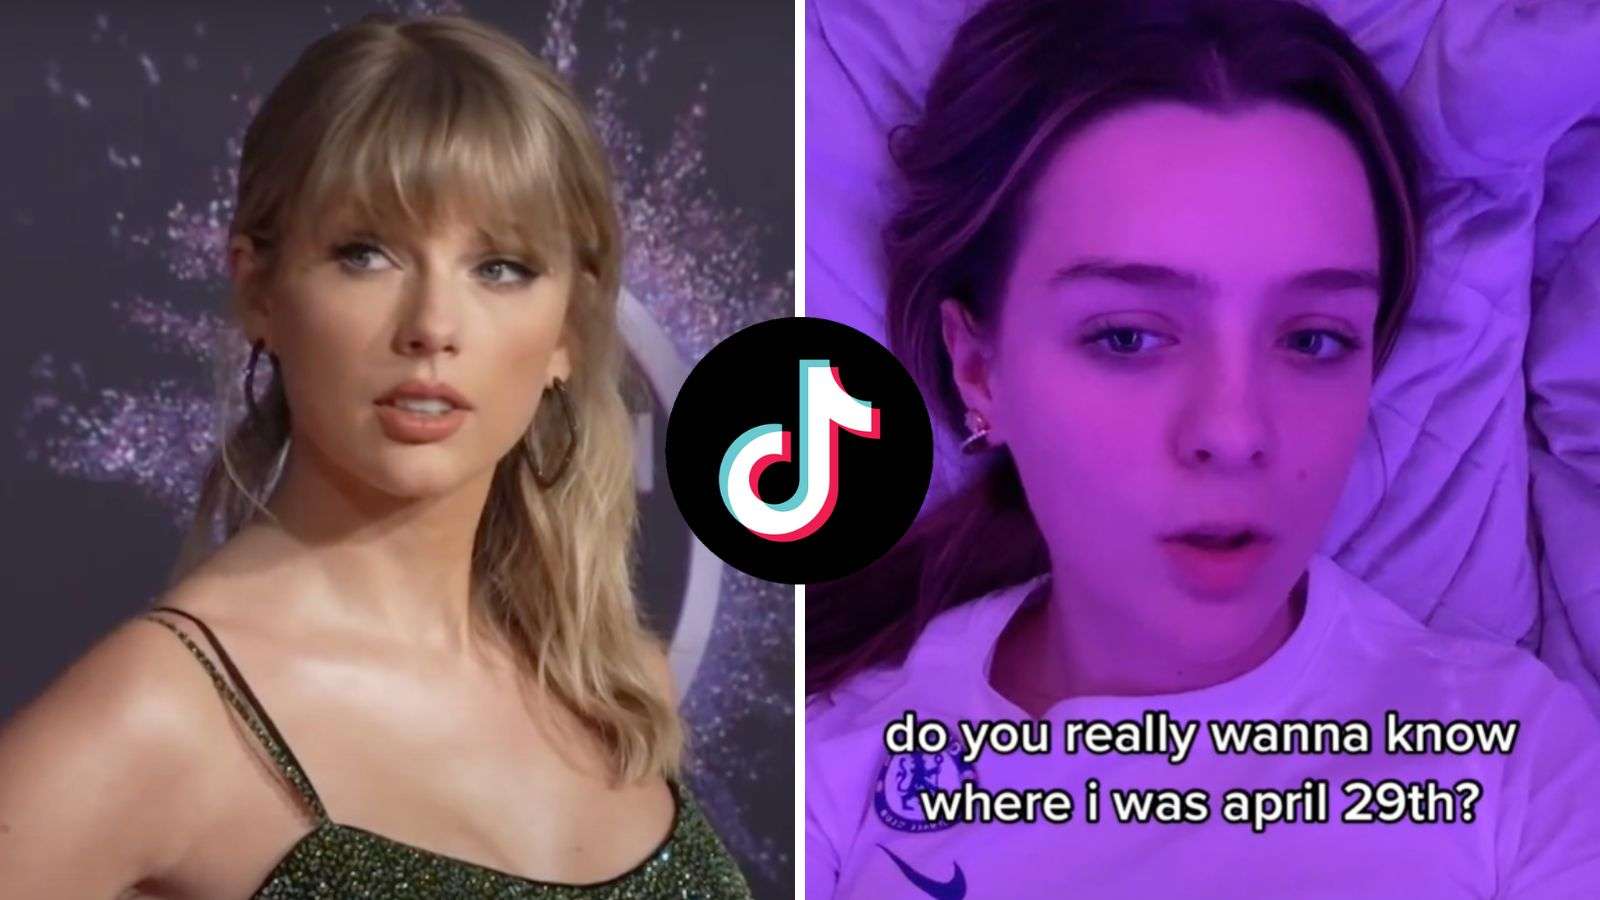 Taylor Swift, TikToker doing viral trend